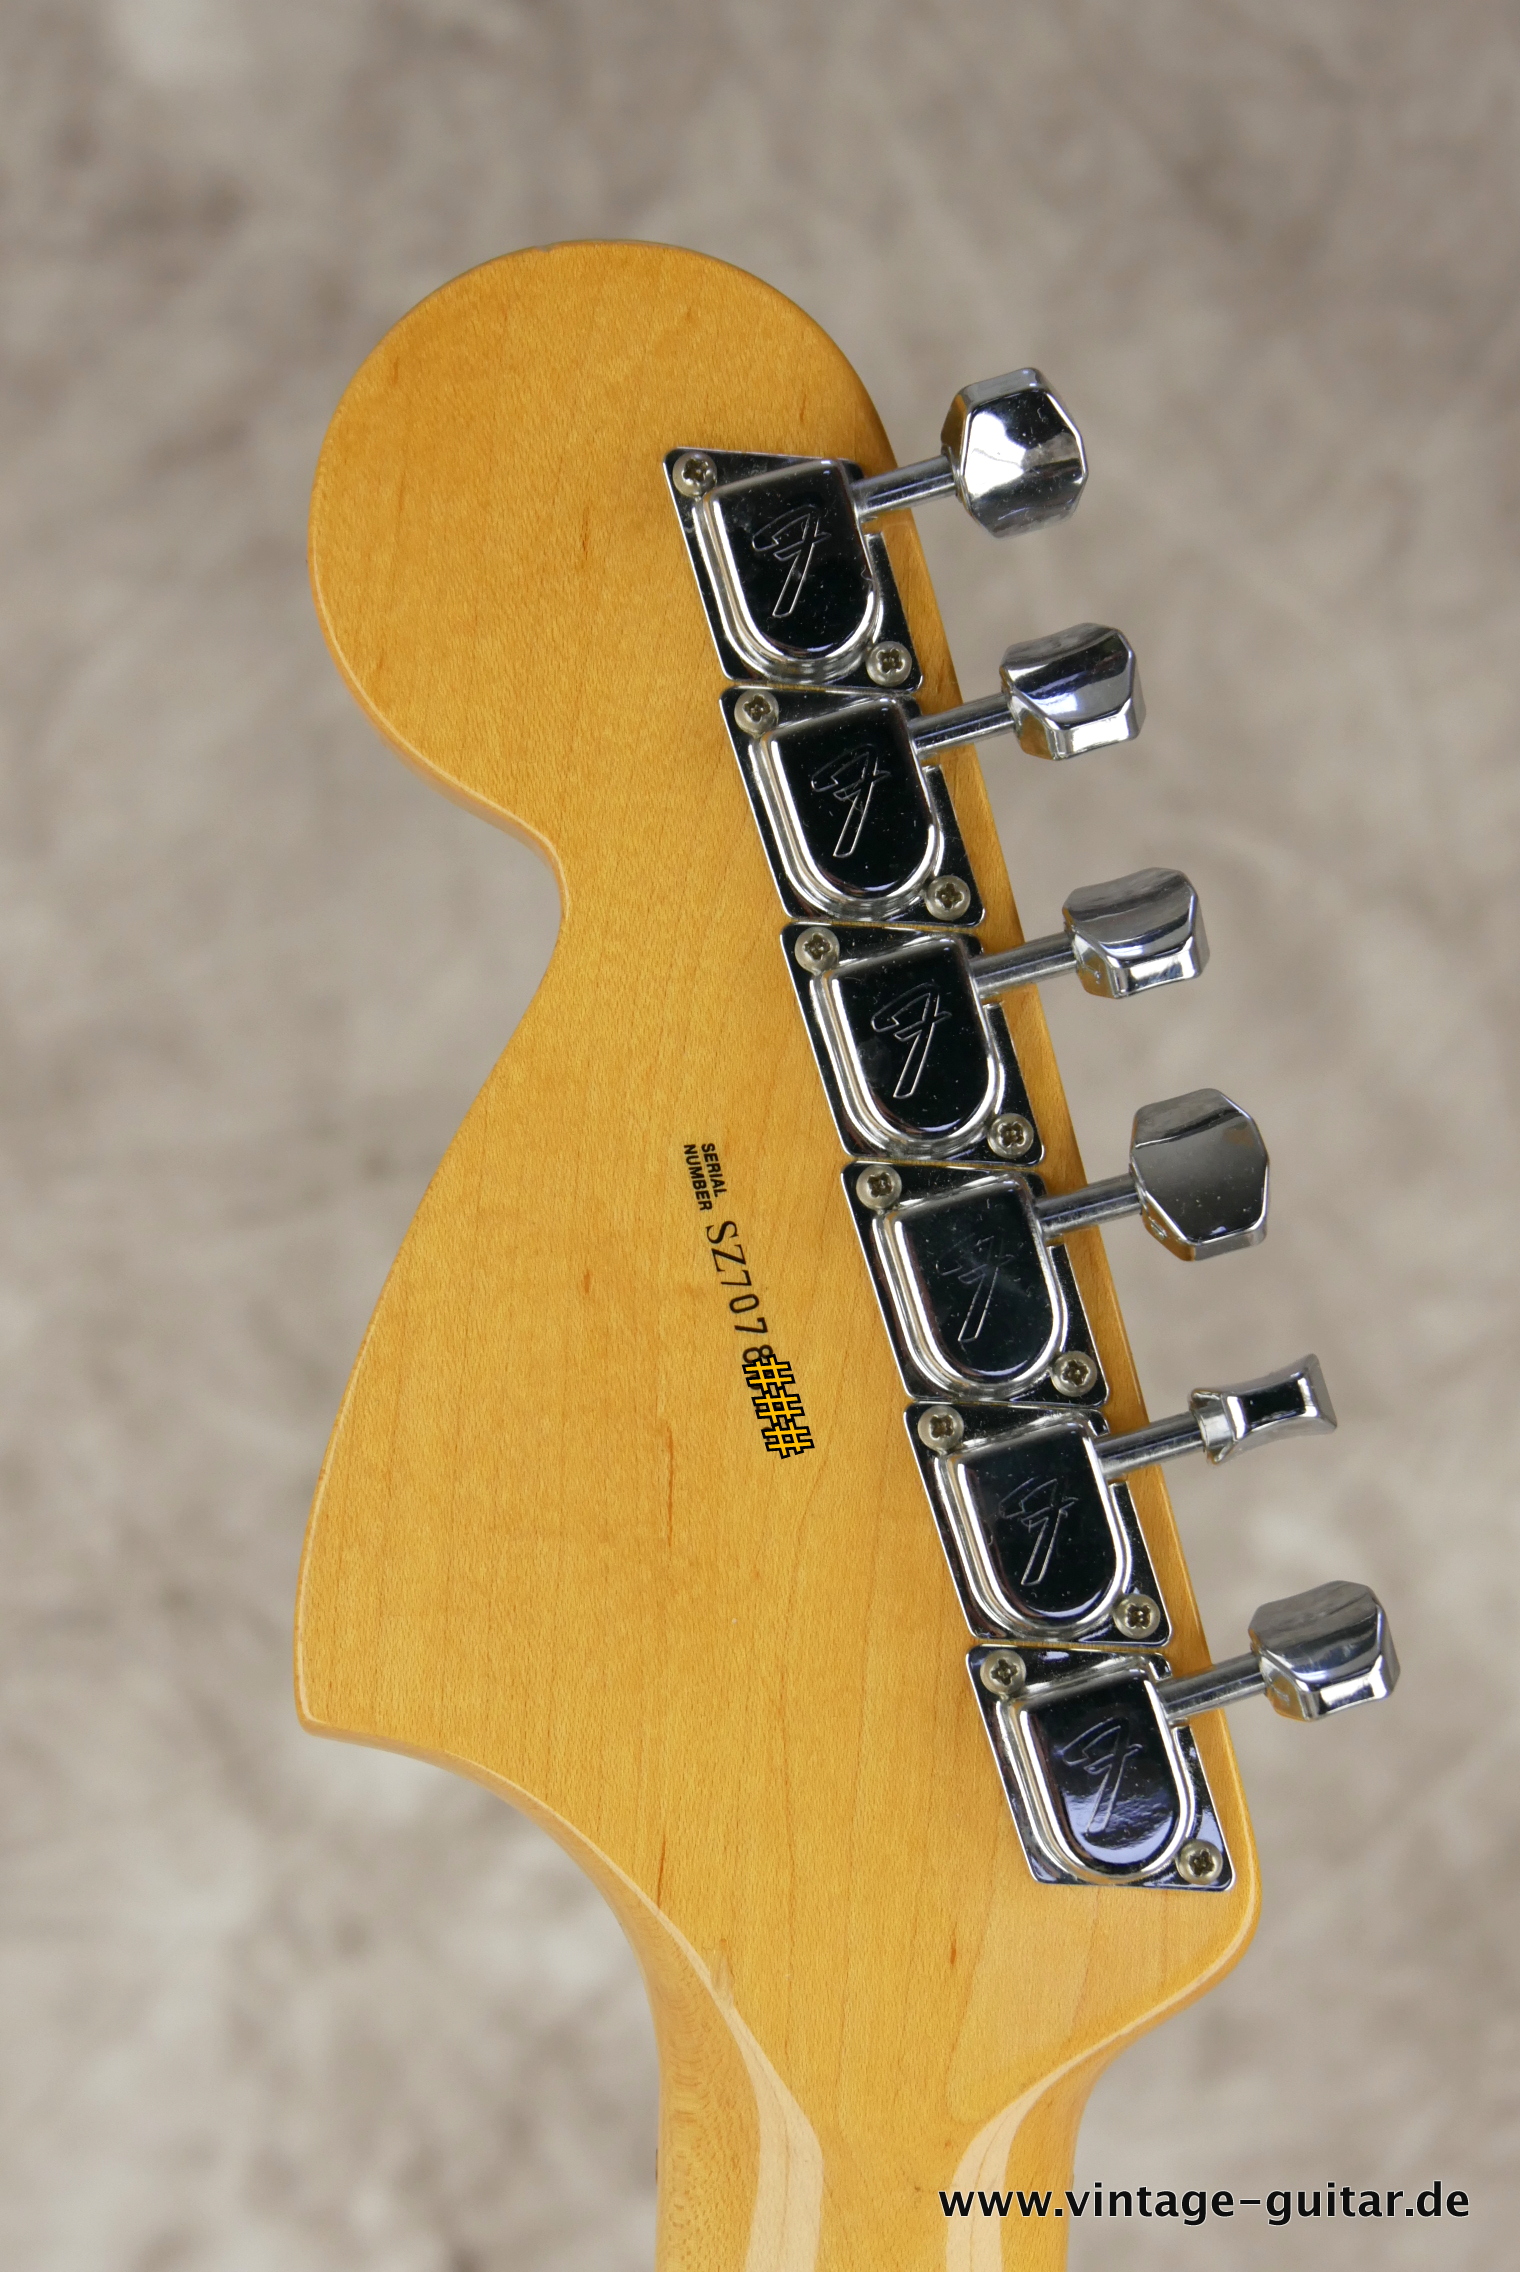 Fender-Stratocaster-Yngwie_malmsteen-2007-scalloped-006.JPG